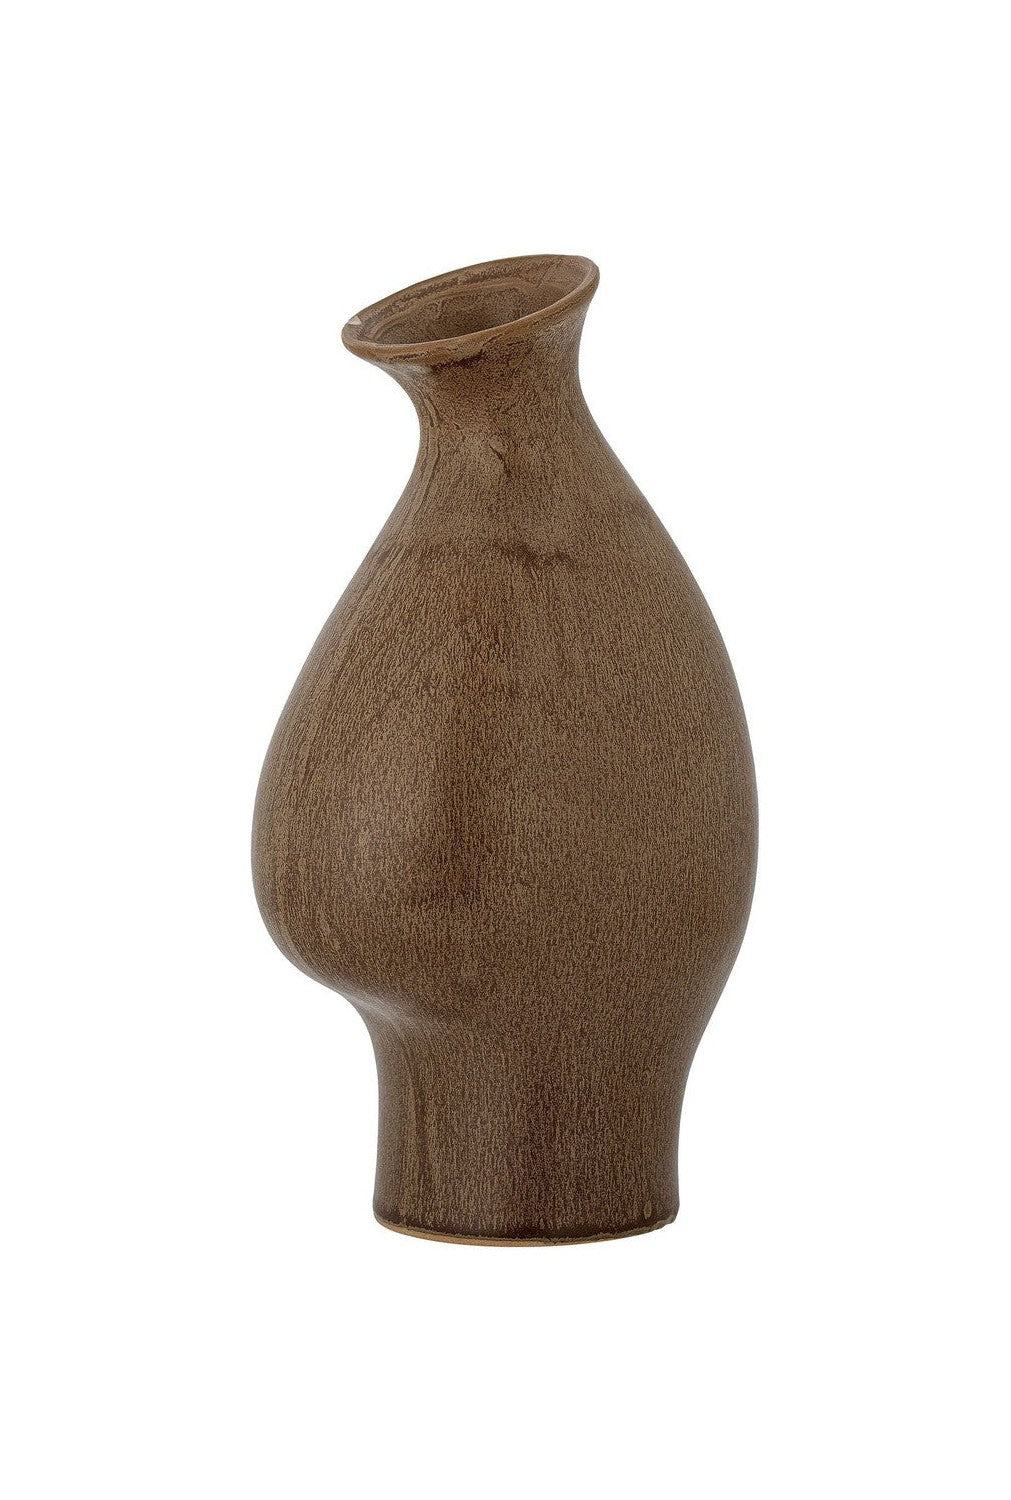 Bloomingville Celin Vase, Brown, Stoneware